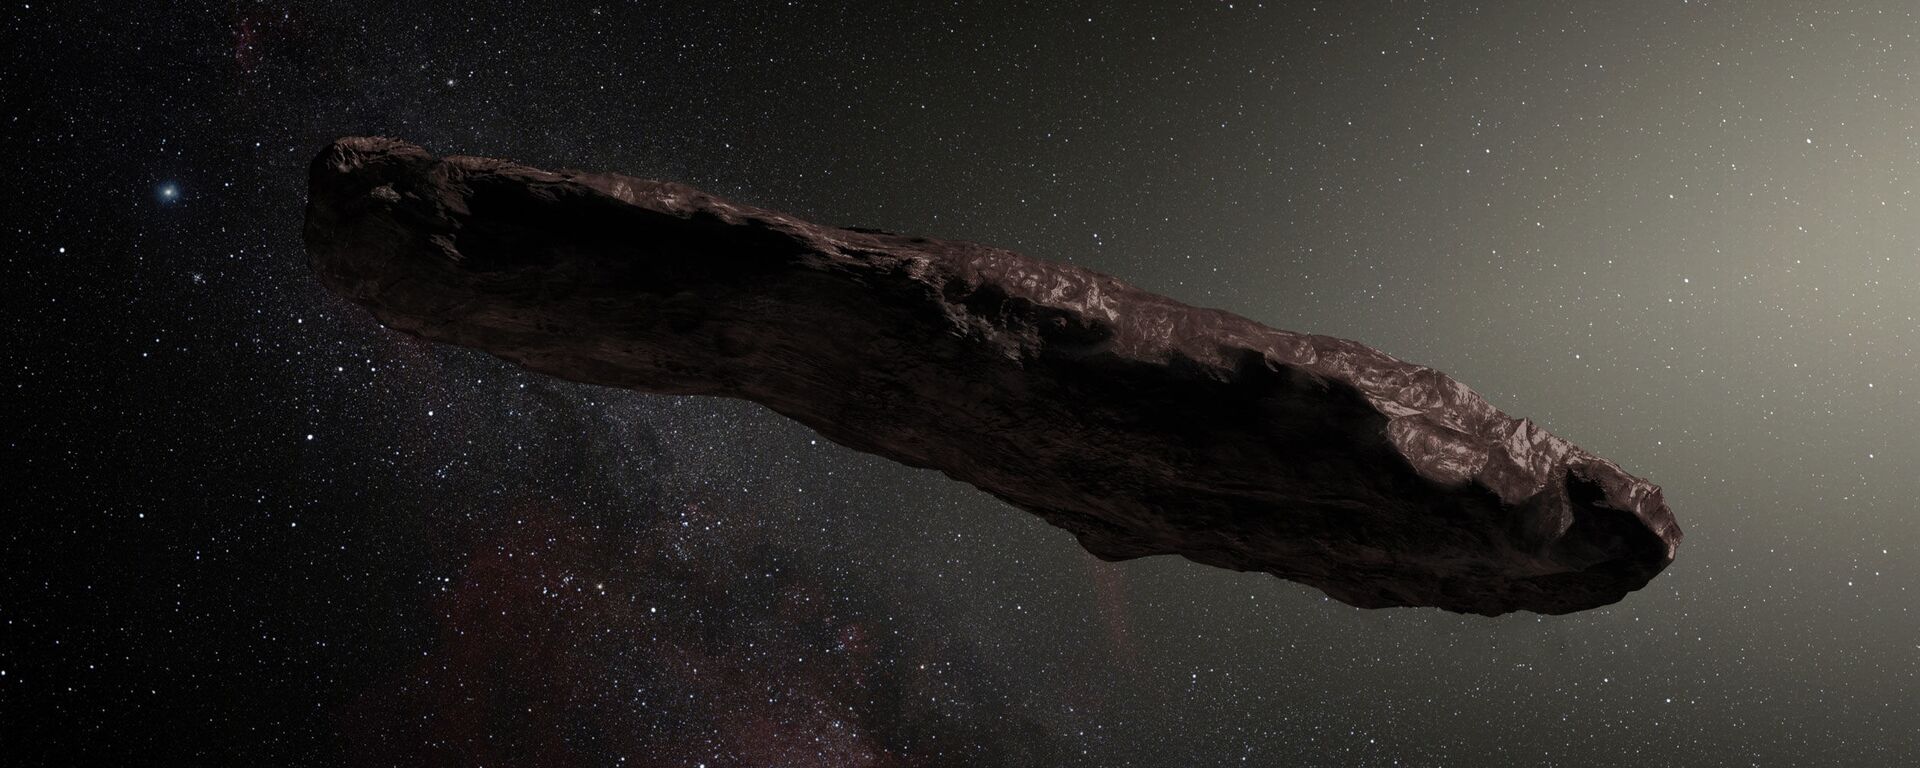 Oumuamua, telo koje leti kroz svemir, a neki naučnici tvrde da je u pitanju vanzemaljska sonda - Sputnik Srbija, 1920, 21.01.2021